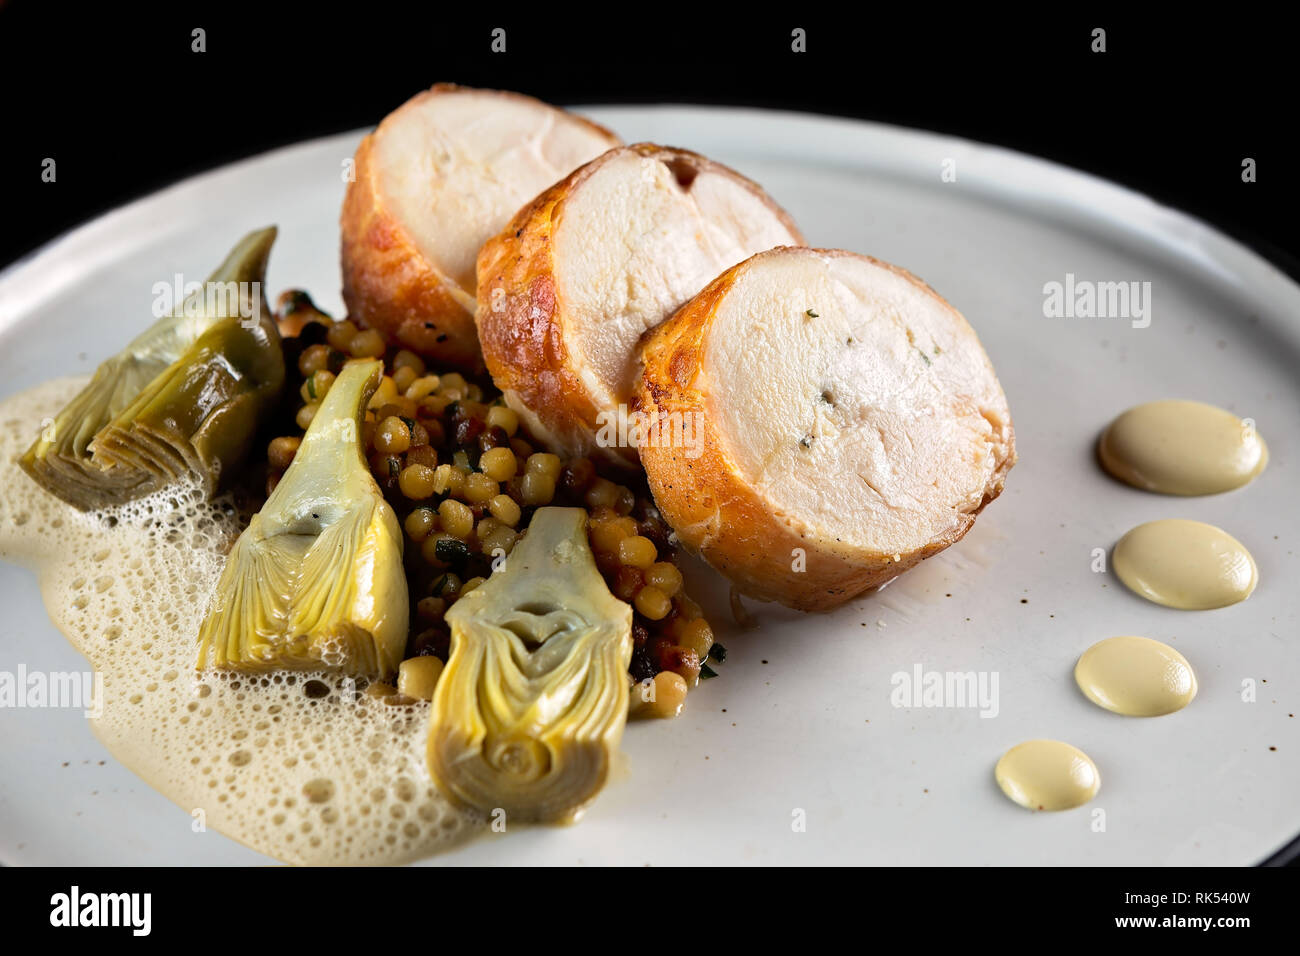 Roulade de poulet au prosciutto, l'artichaut et l'émulsion sur une assiette blanche et fond noir Banque D'Images